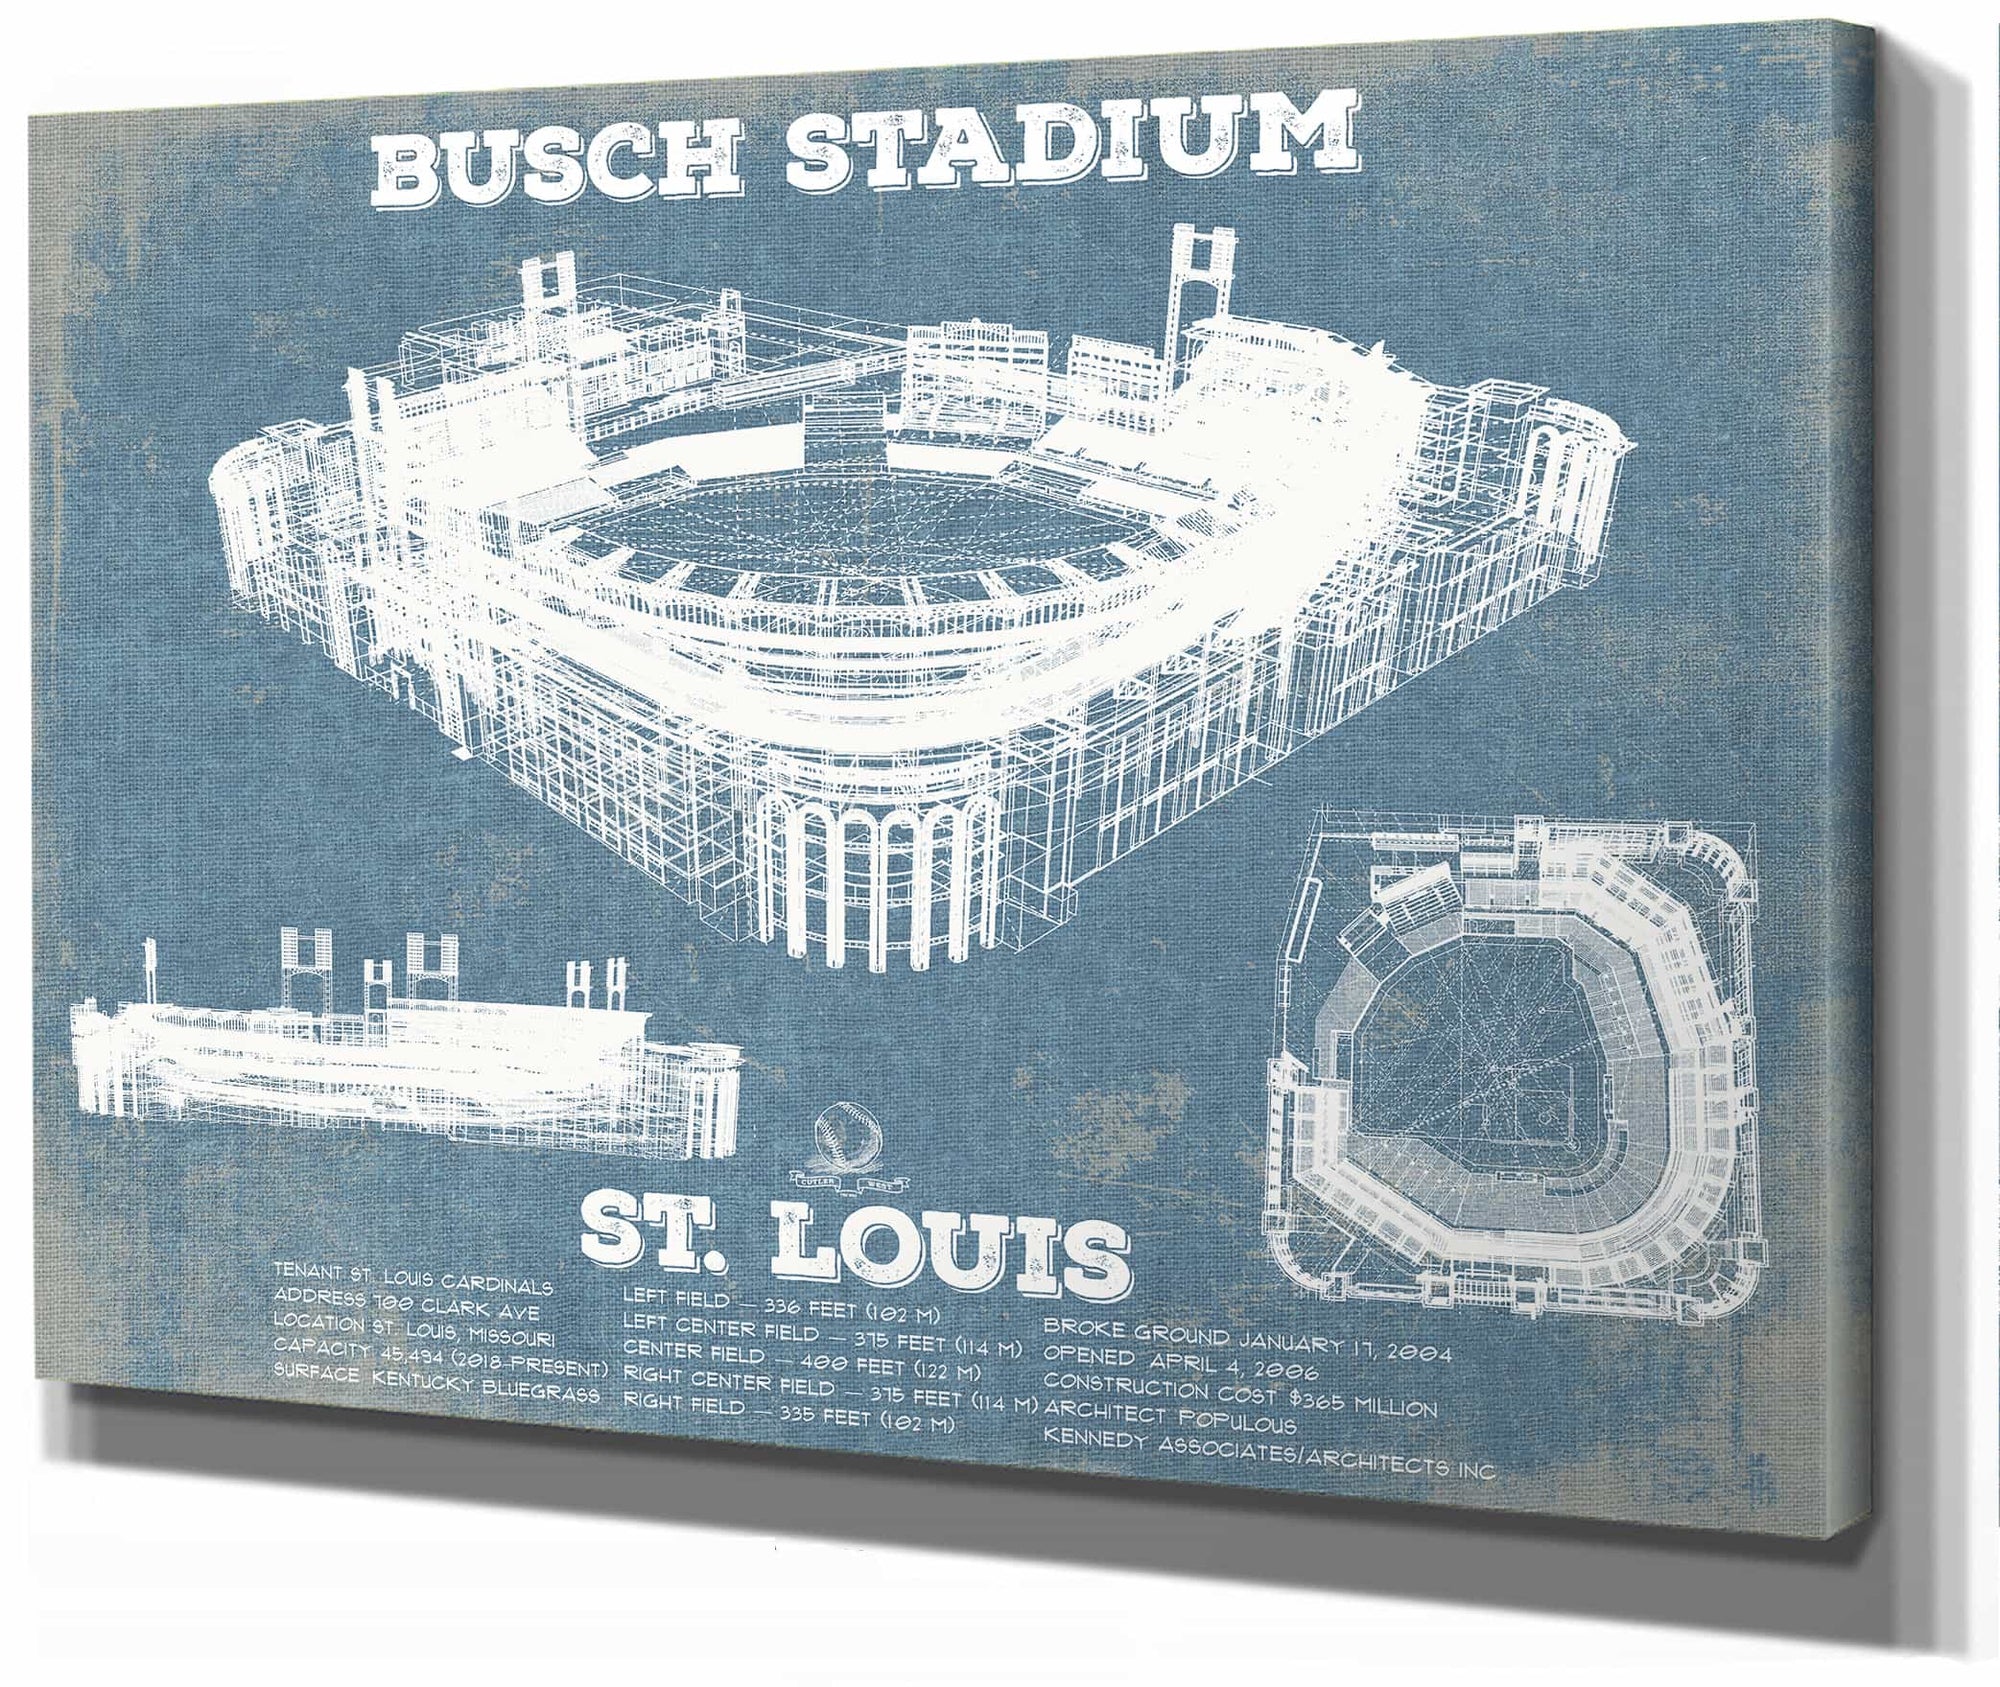 St. Louis Cardinals Busch Stadium Vintage Baseball Print